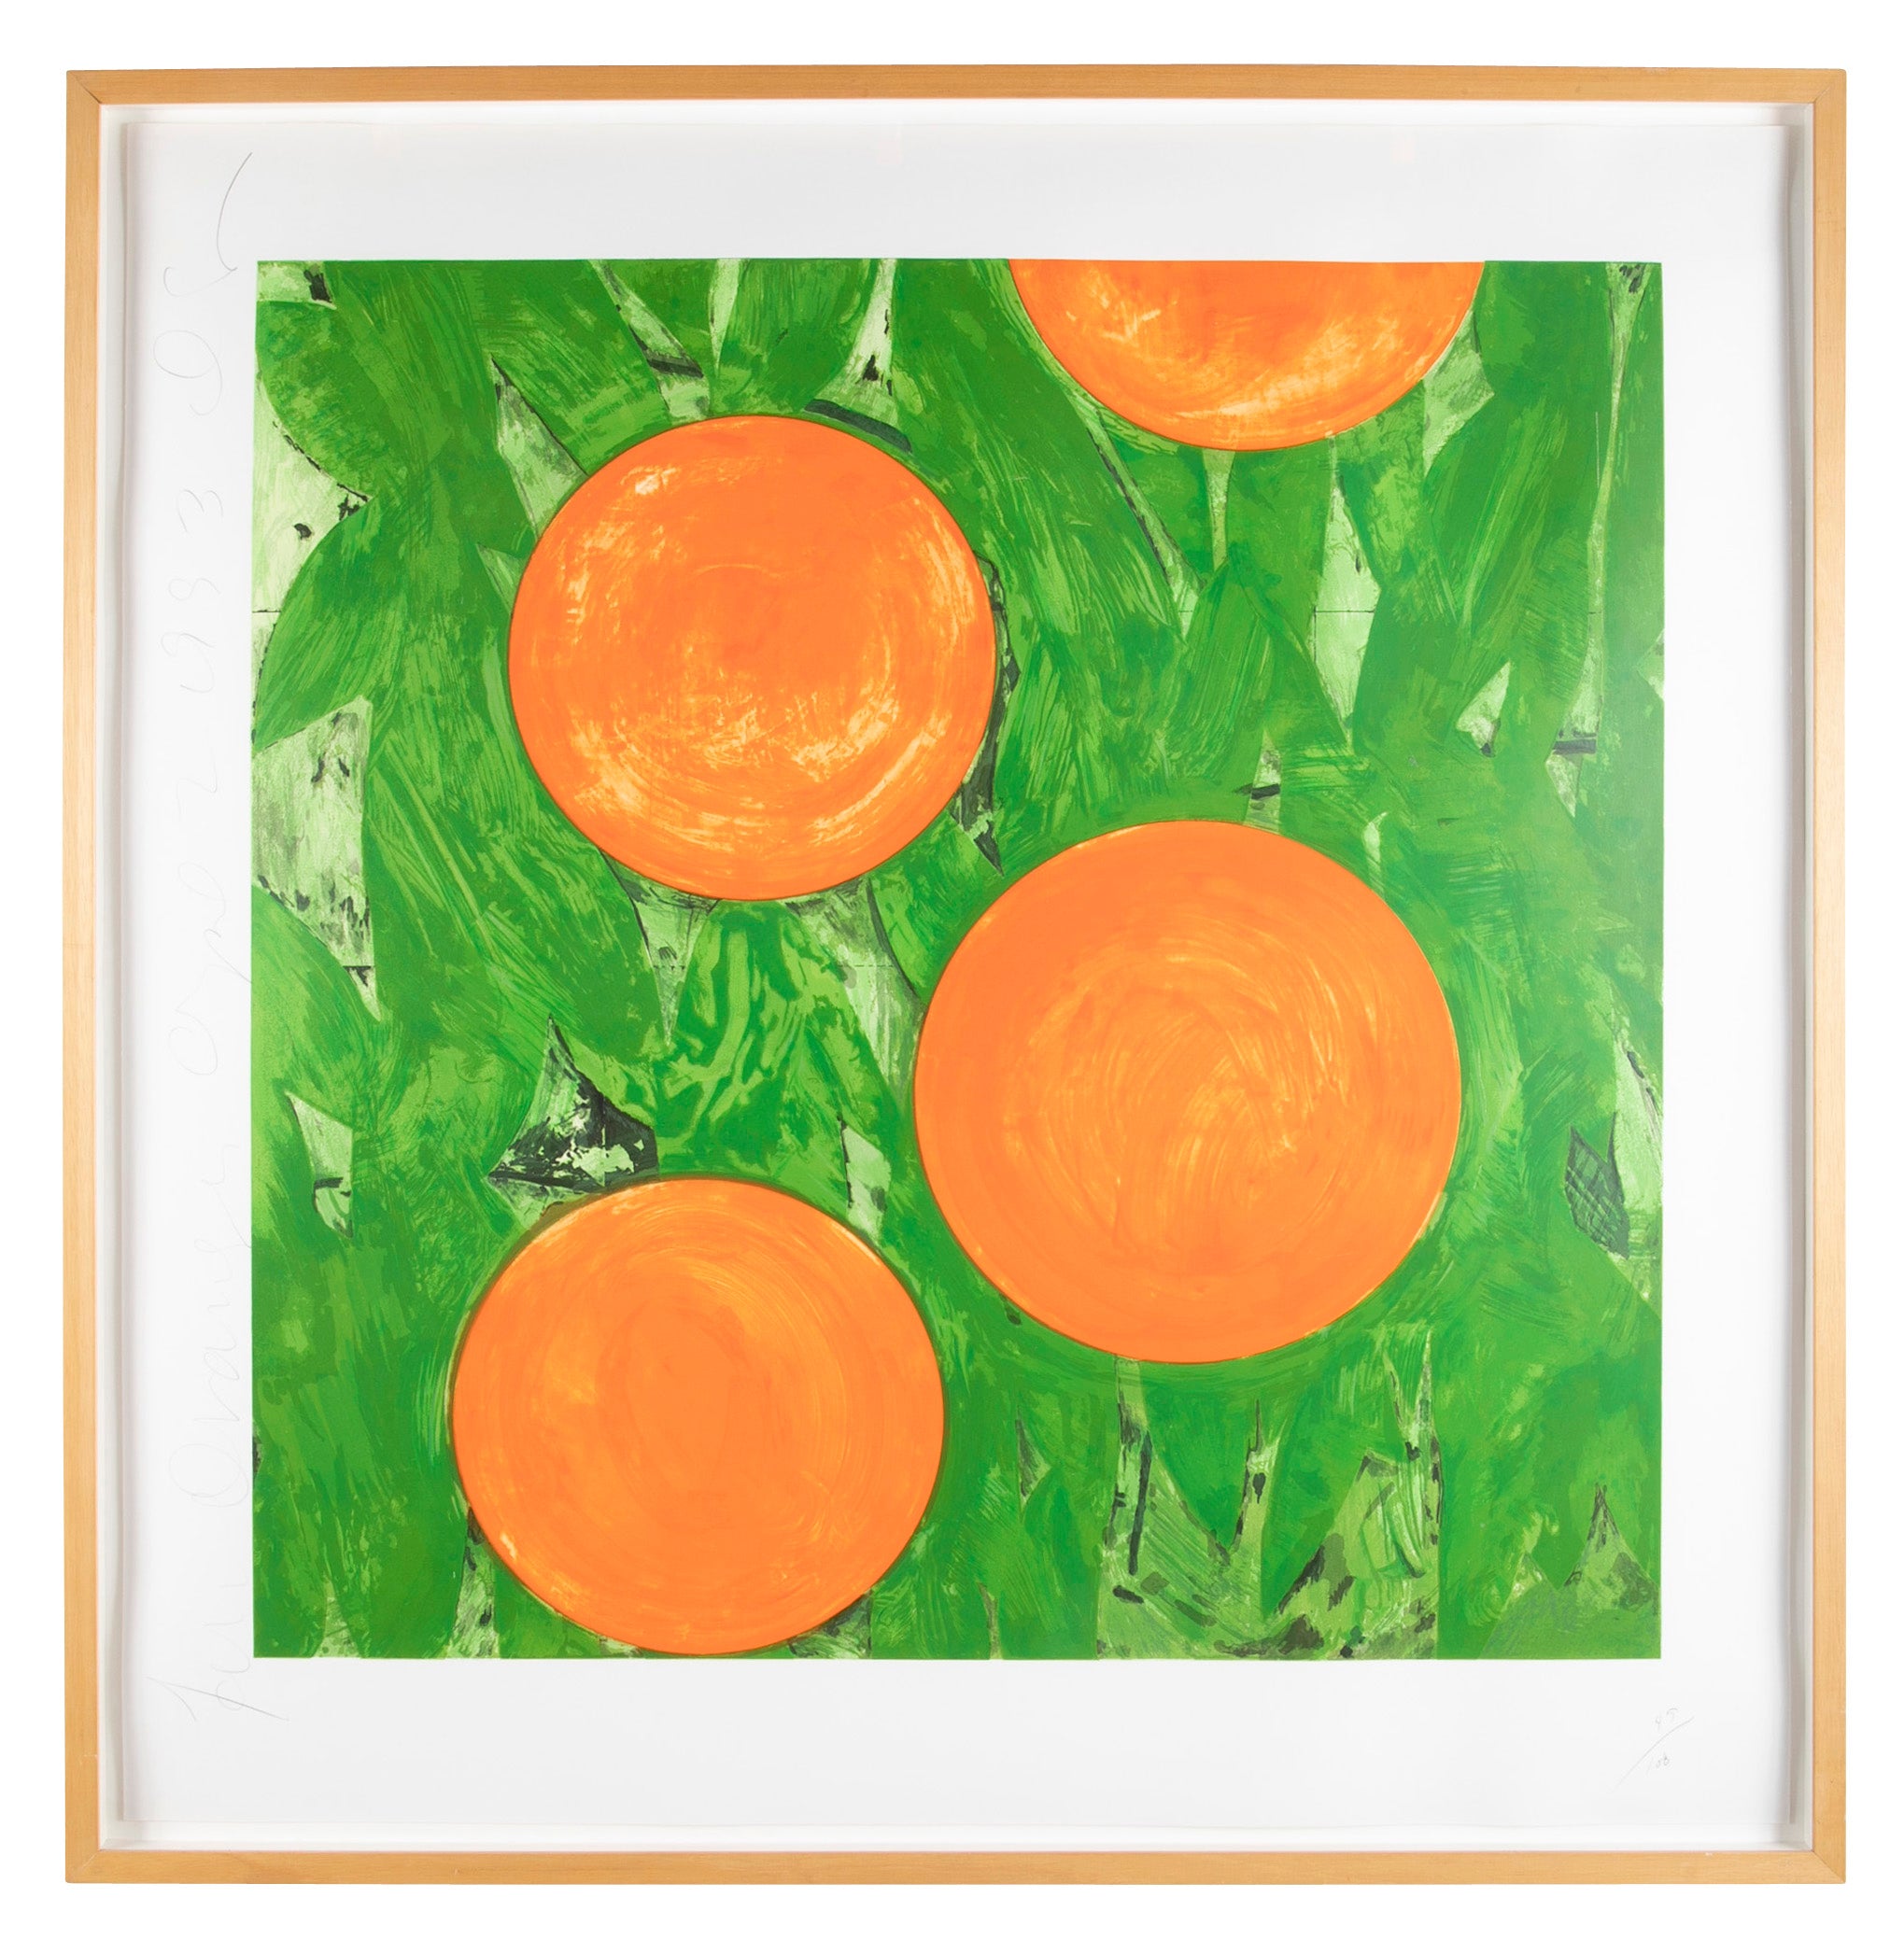 "Four Oranges April 2 1993" by Donald Sultan